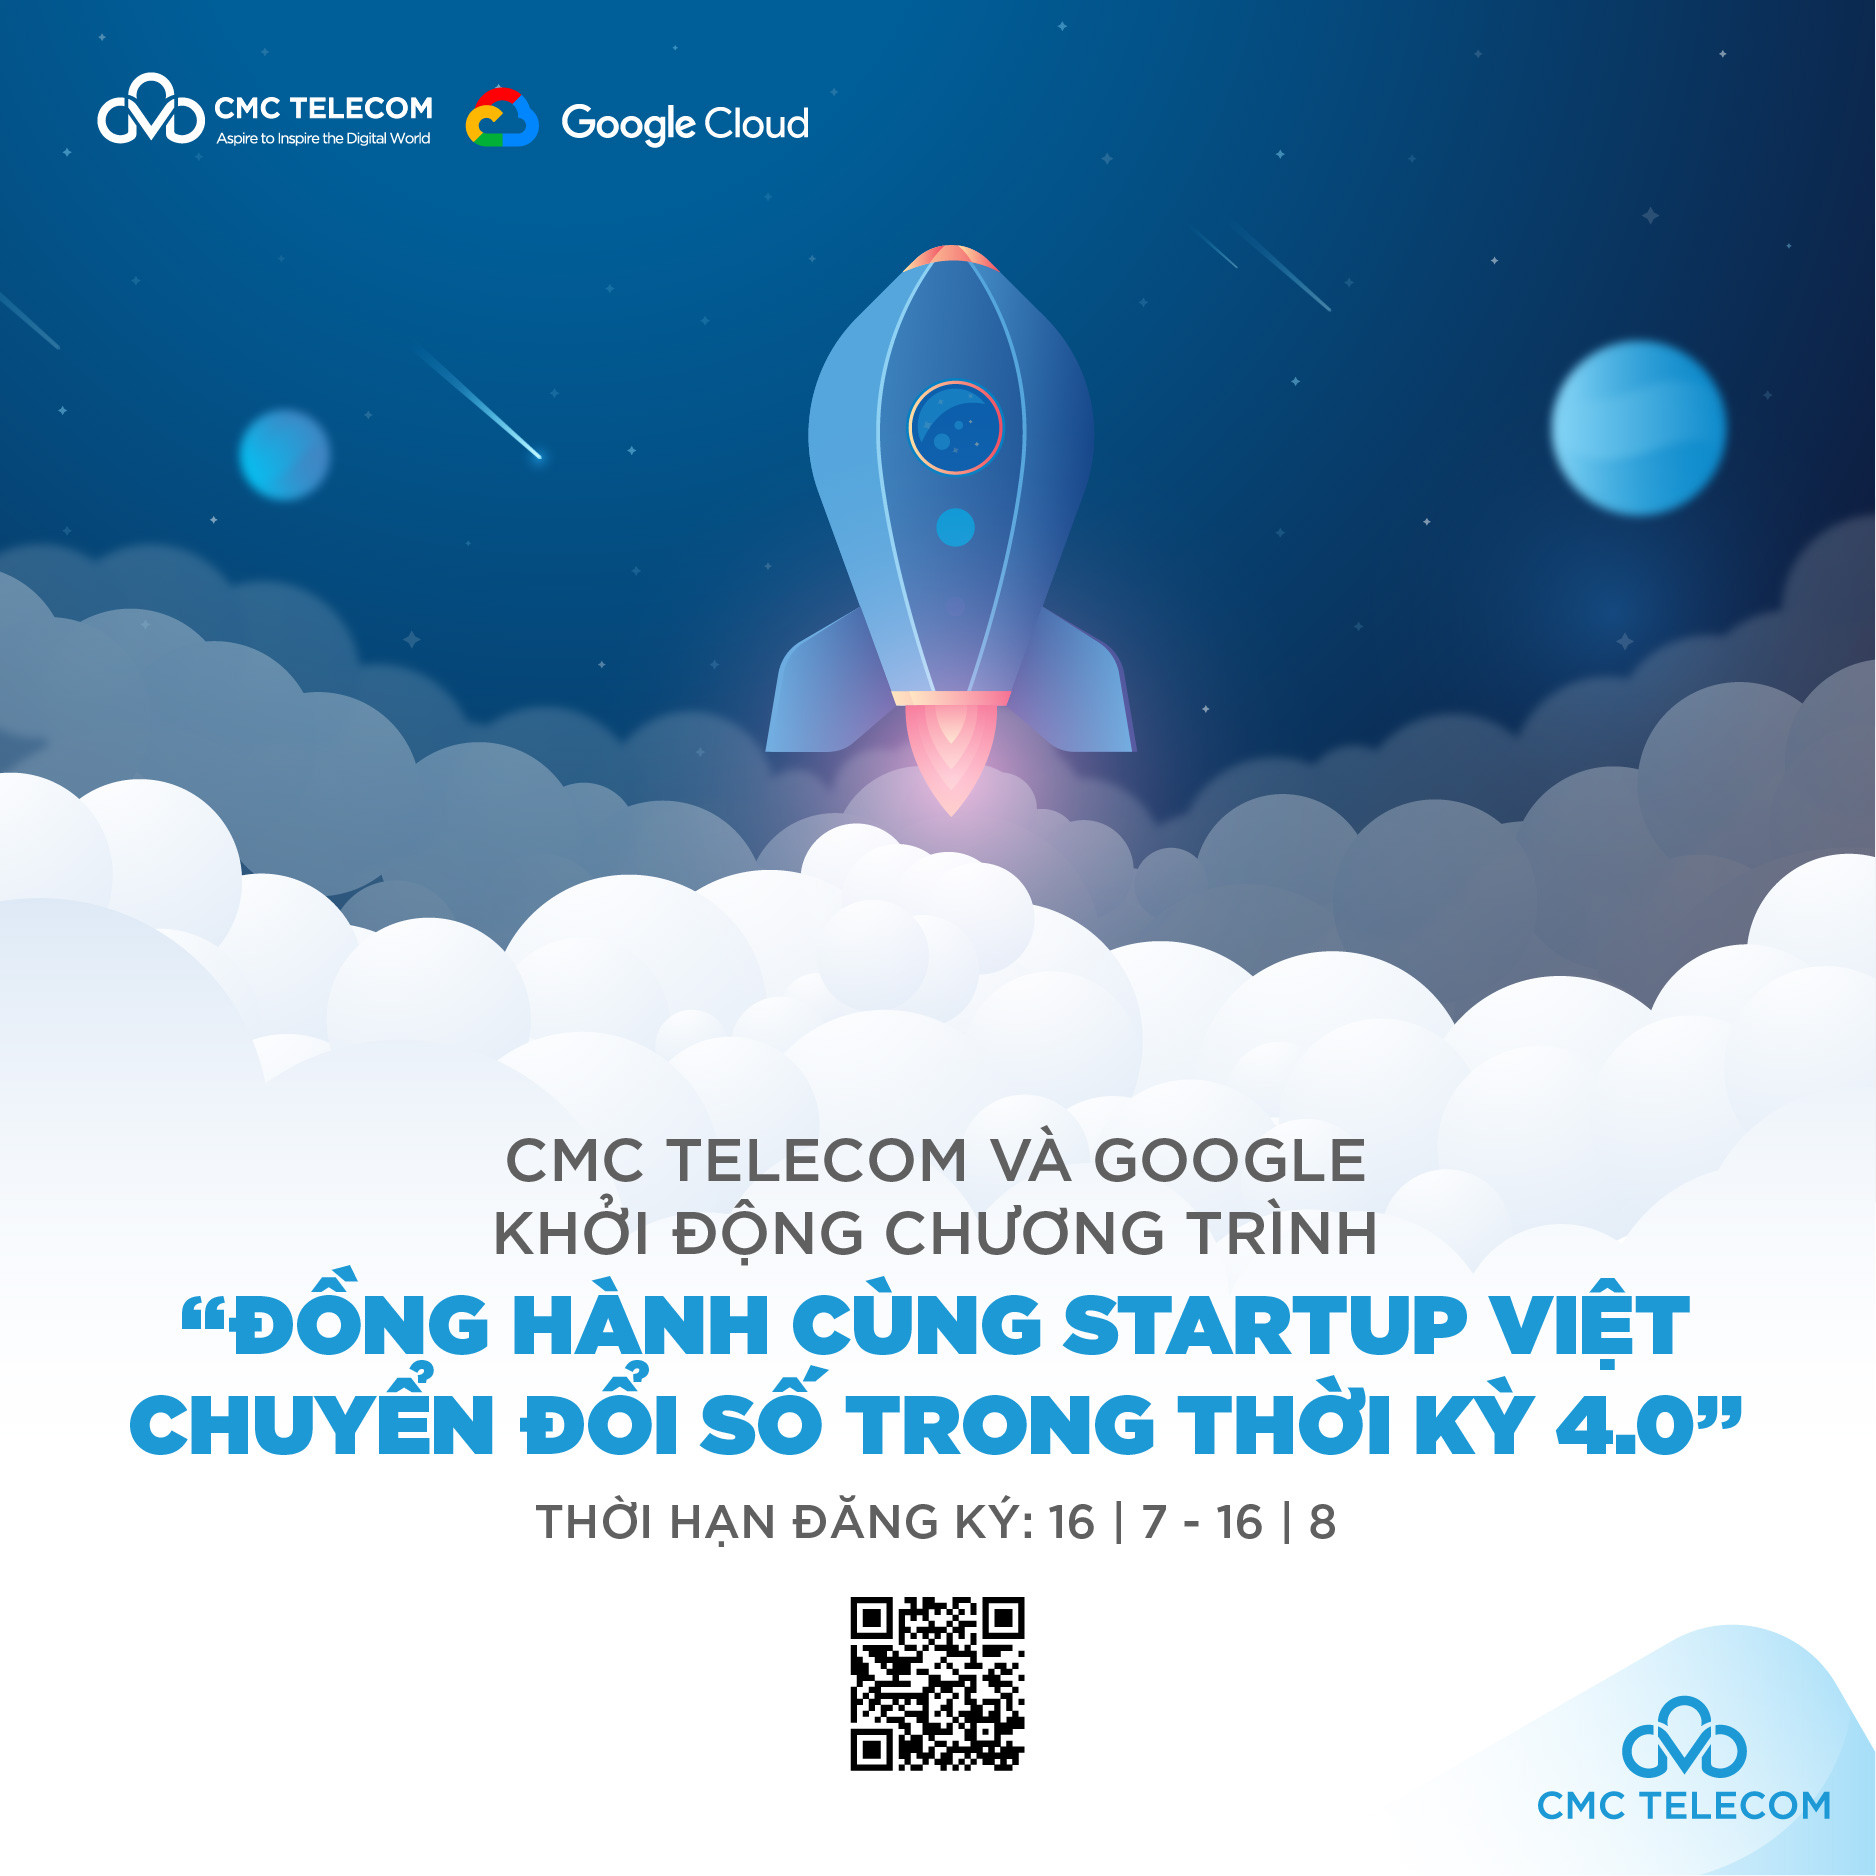 CMC Telecom, Google Cloud đồng hành cùng startup Việt chuyển đổi số trong thời kỳ 4.0 - Ảnh 1.